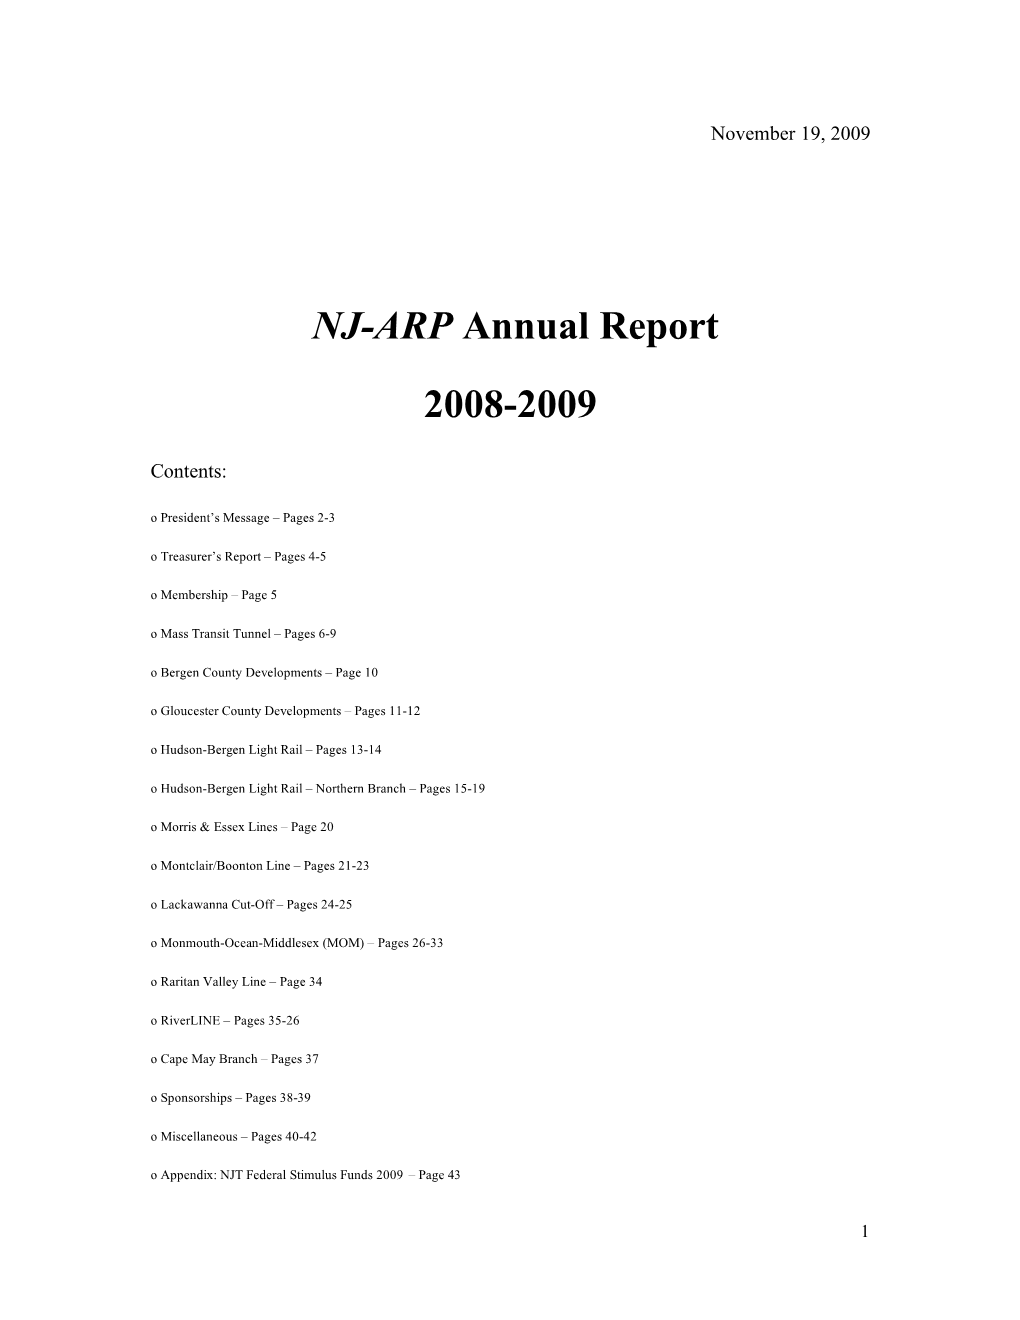 NJ-ARP Annual Report 2008-2009